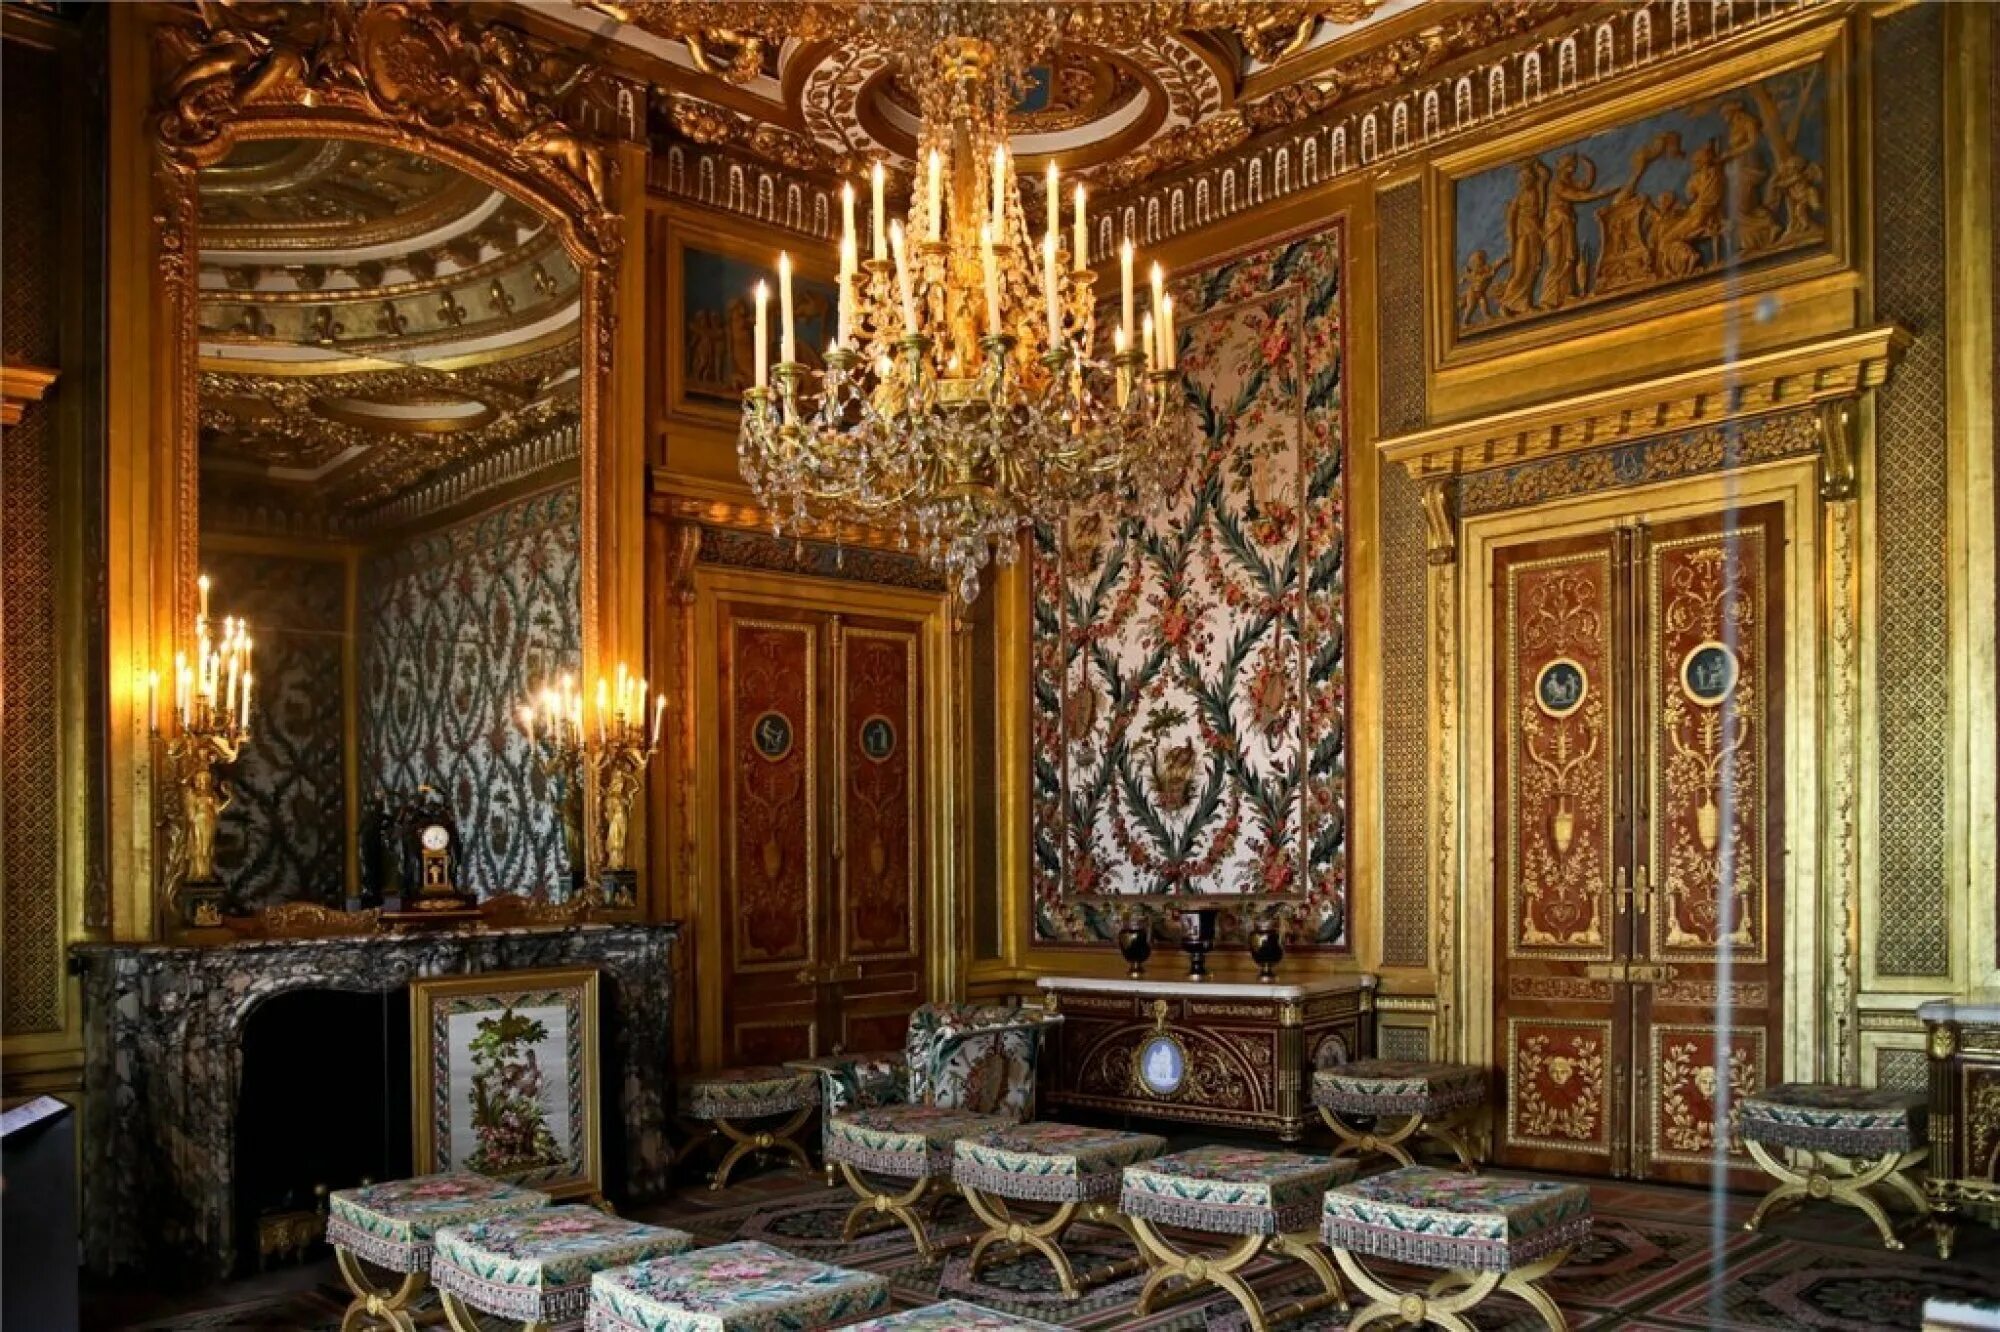 Ампир дворец Фонтенбло. Версальский дворец спальня короля. Спальня императора, дворец Фонтенбло. Версальский дворец рококо. Версаль интерьер